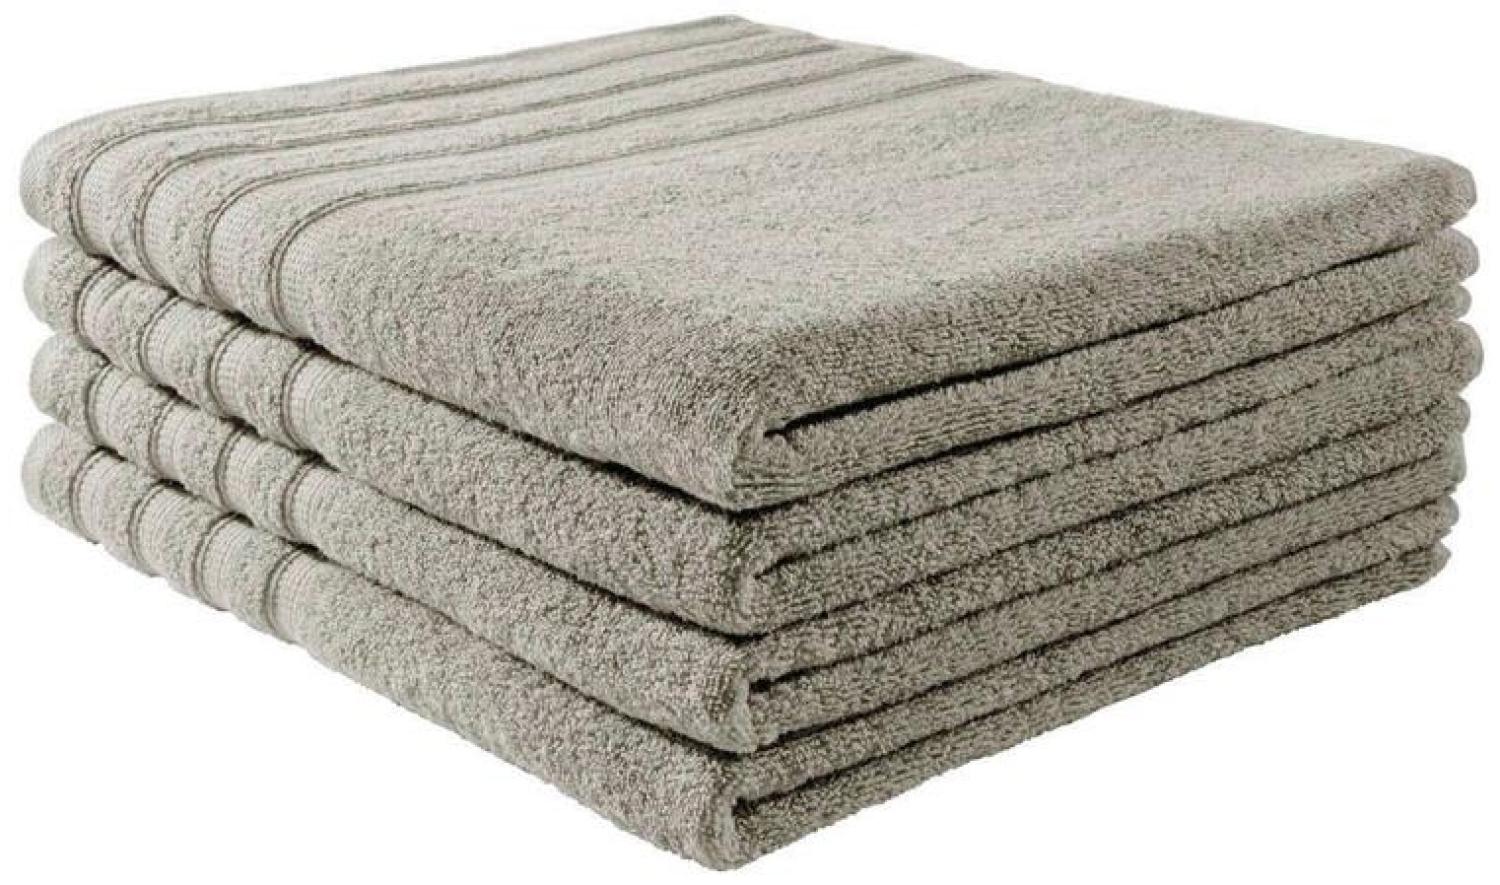 Handtuch Baumwolle Plain Design - Farbe: Dunkelgrau, Größe: 70x140 cm Bild 1